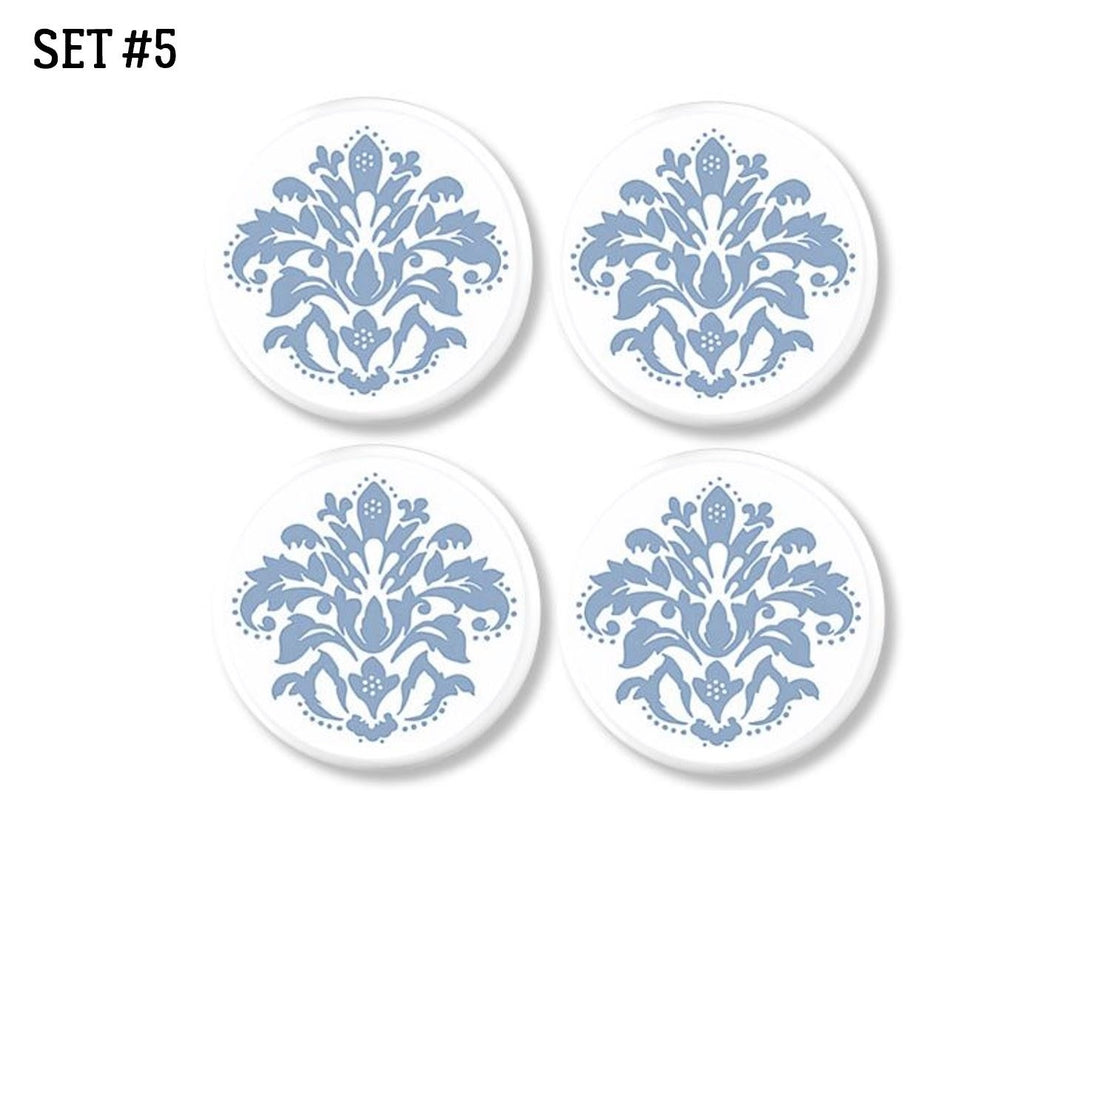 4 Light blue leaf floral damask print knobs on white. Furniture drawer pulls in pastel color for baby nursery or bathroom.